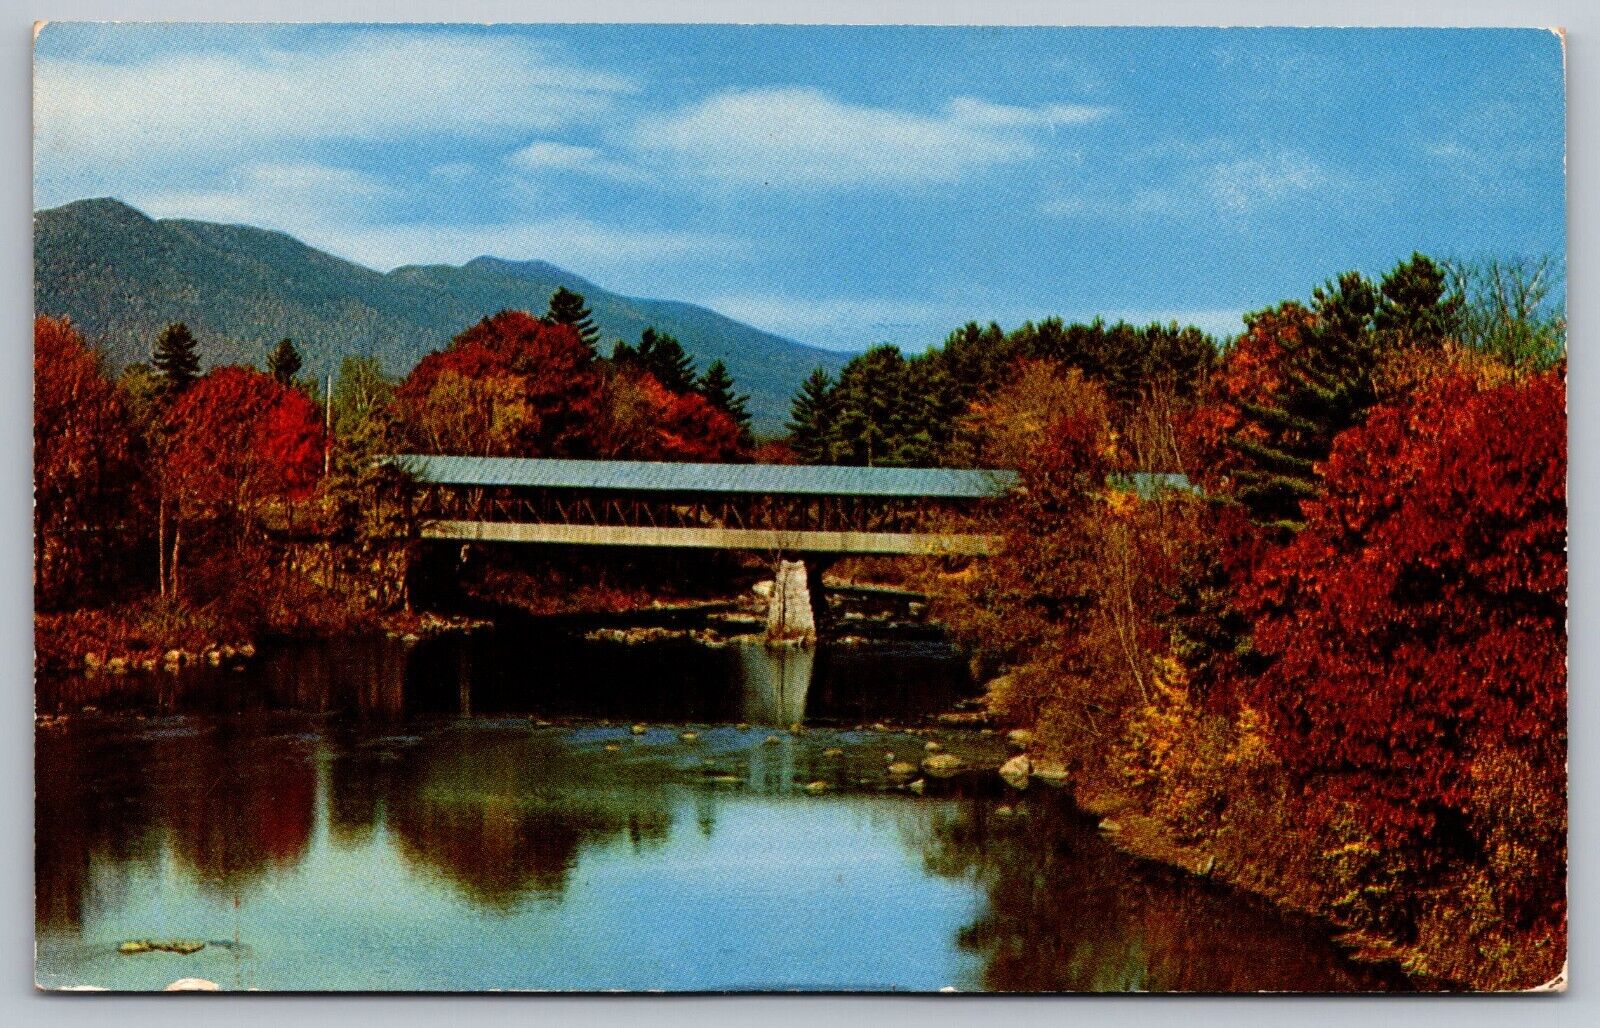 Postcard D 42, Typical Vermont Covered Bridge, The Old Arlington Bridge, Vermont